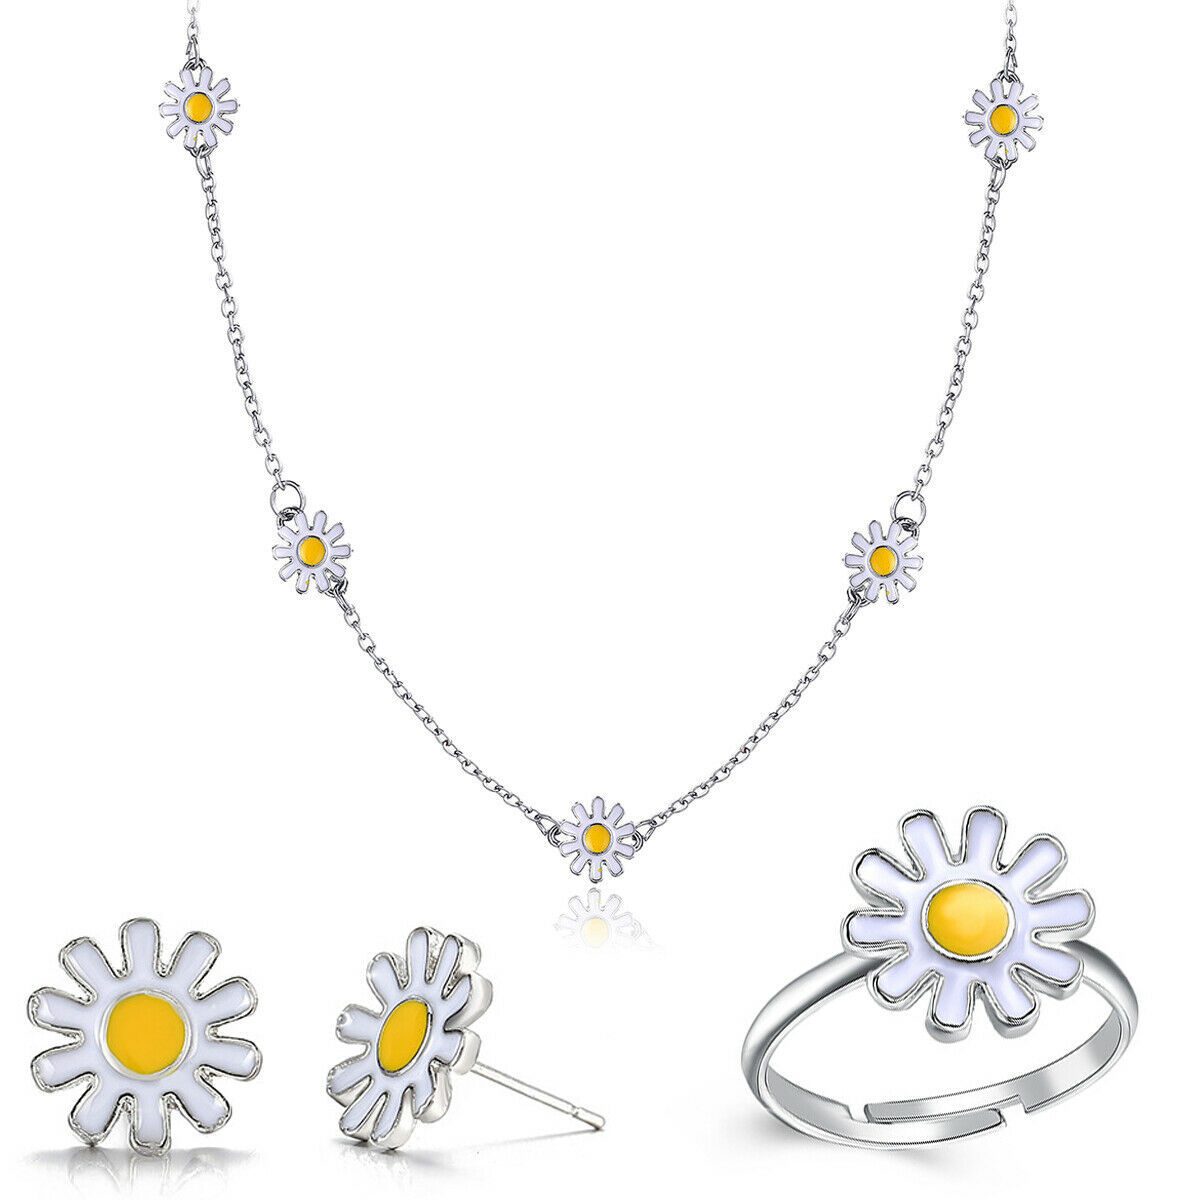 7Pcs/set Daisy Sunflower Bracelet Necklace Drop Earrings Women Jewelry Set Gifts